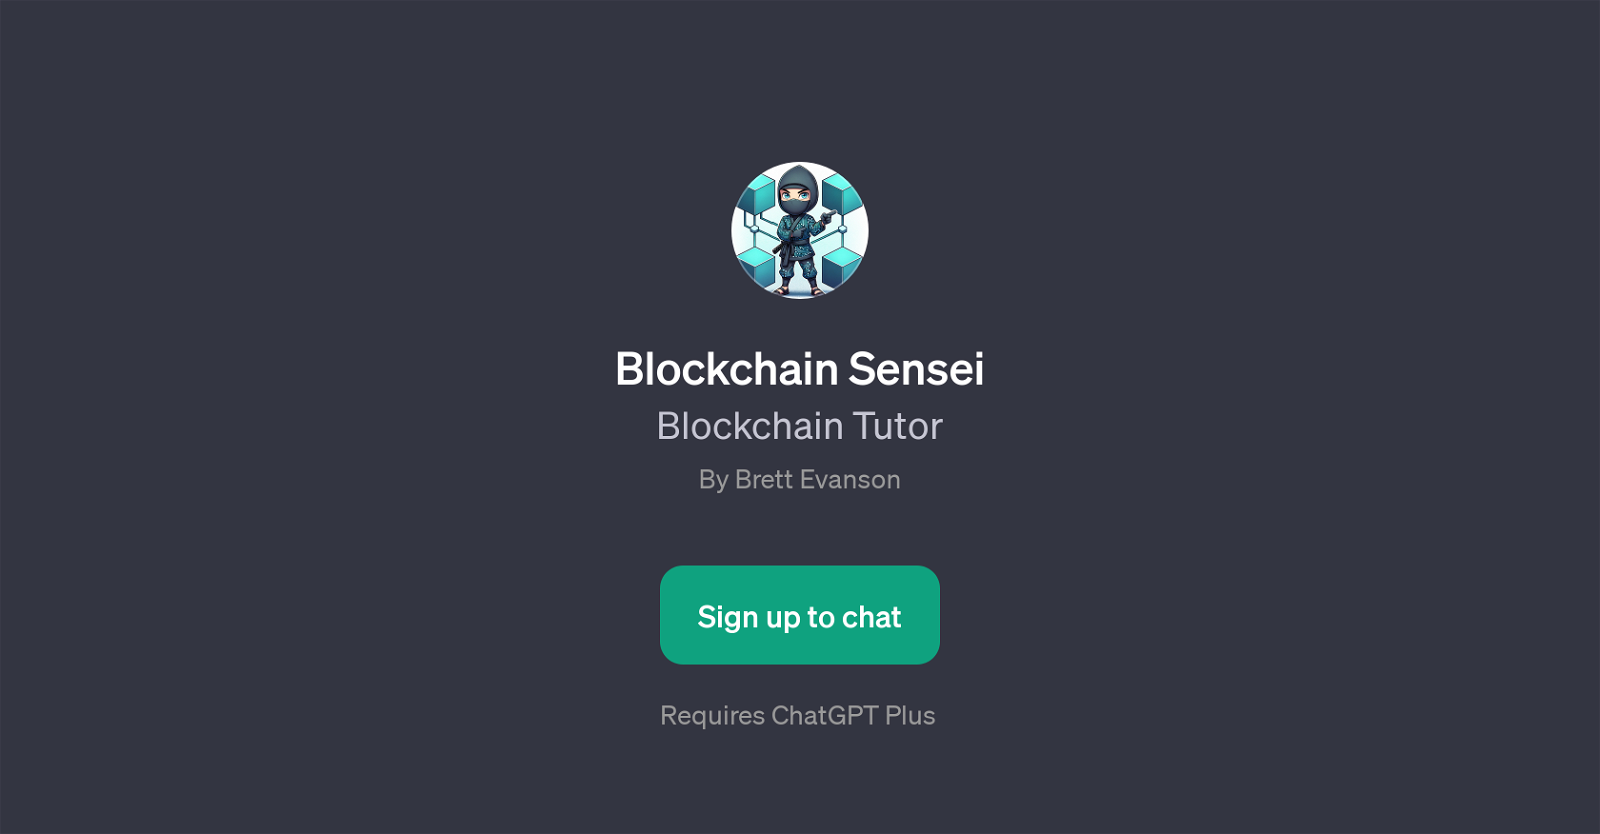 Blockchain Sensei website